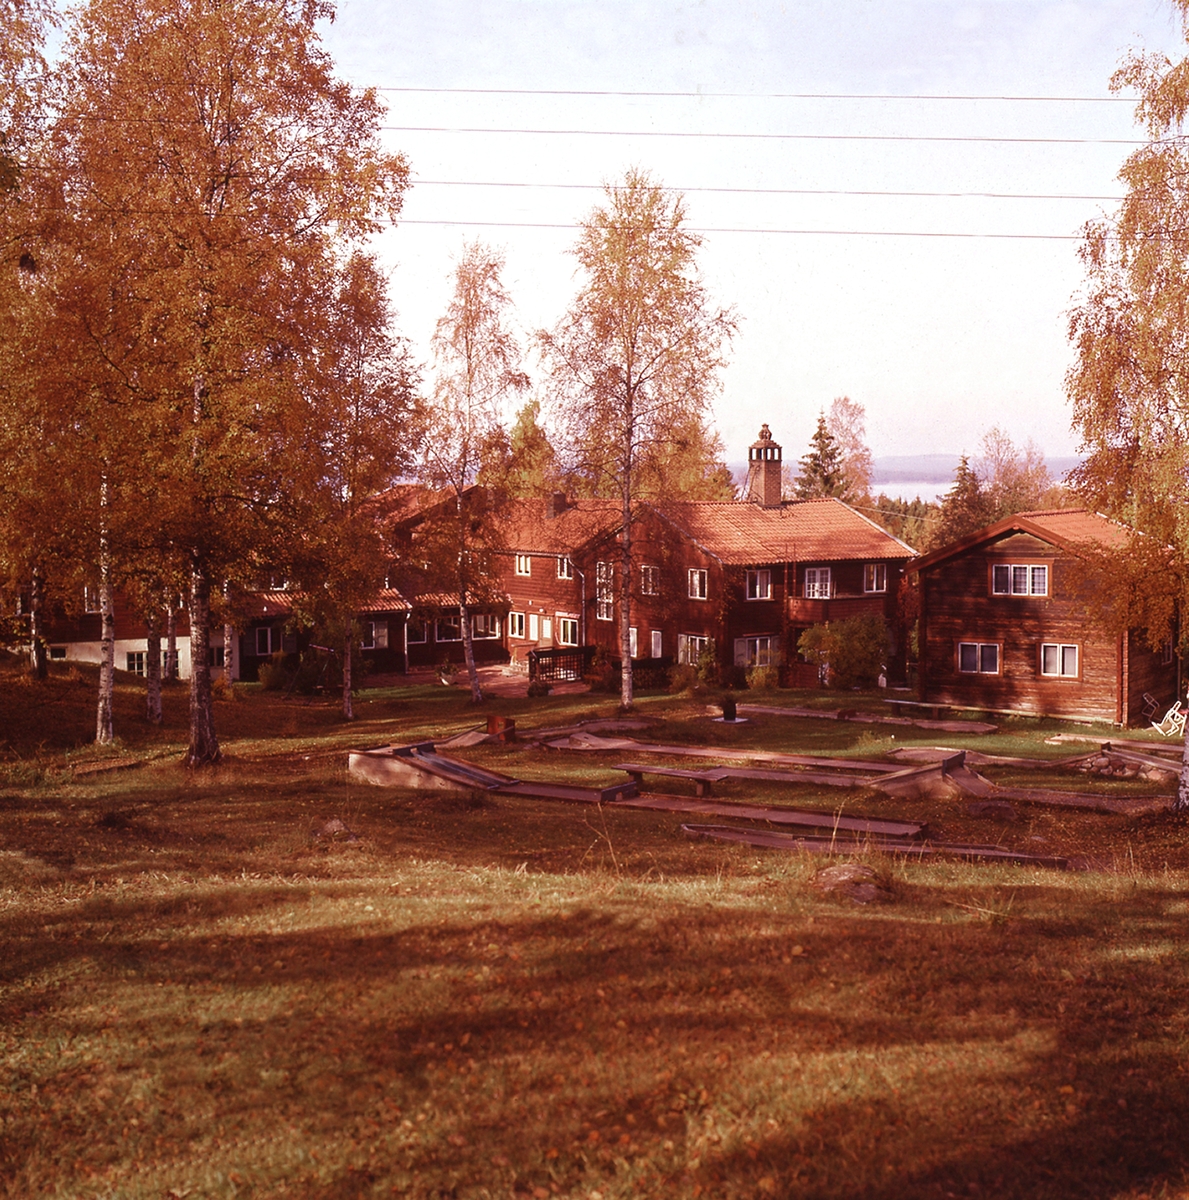 Minigolfbanor är belägna i skogsbrynet, bakom huvudbyggnaden som
syns i bakgrun-den.